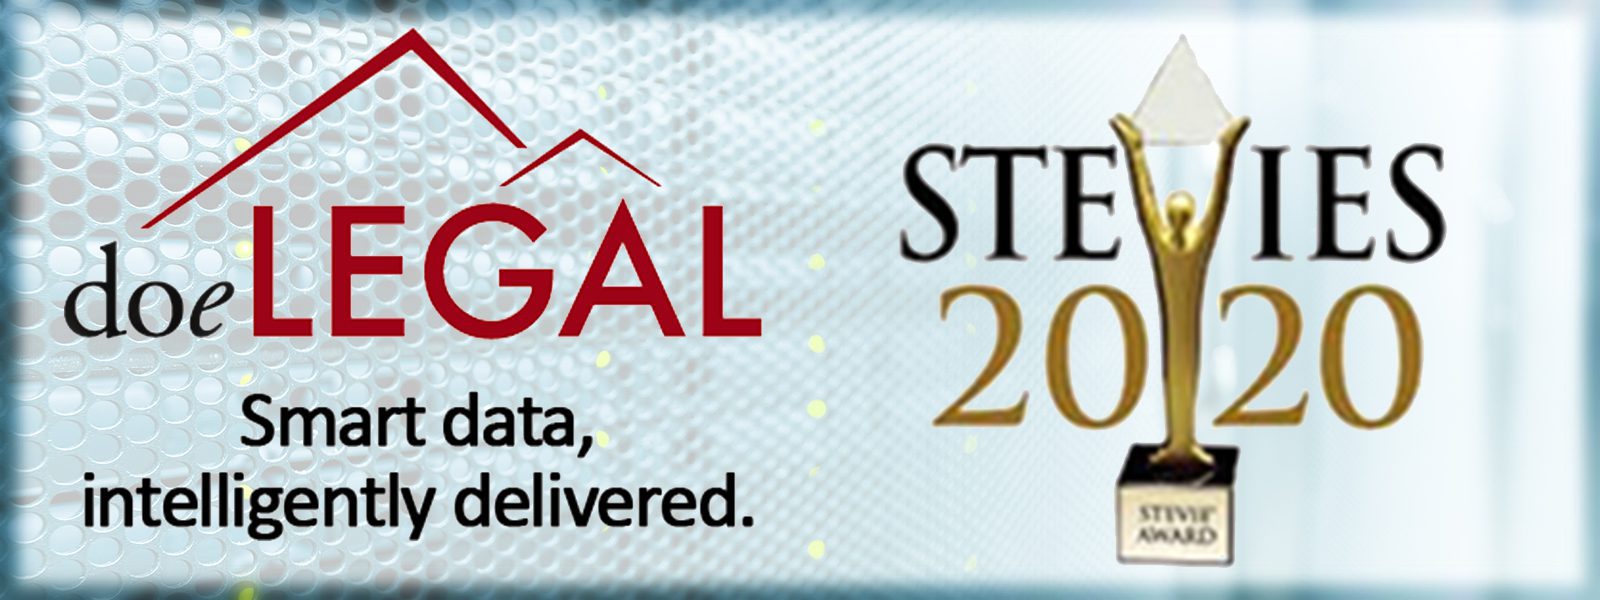 doeLEGAL-Stevie-Award-2020-blog